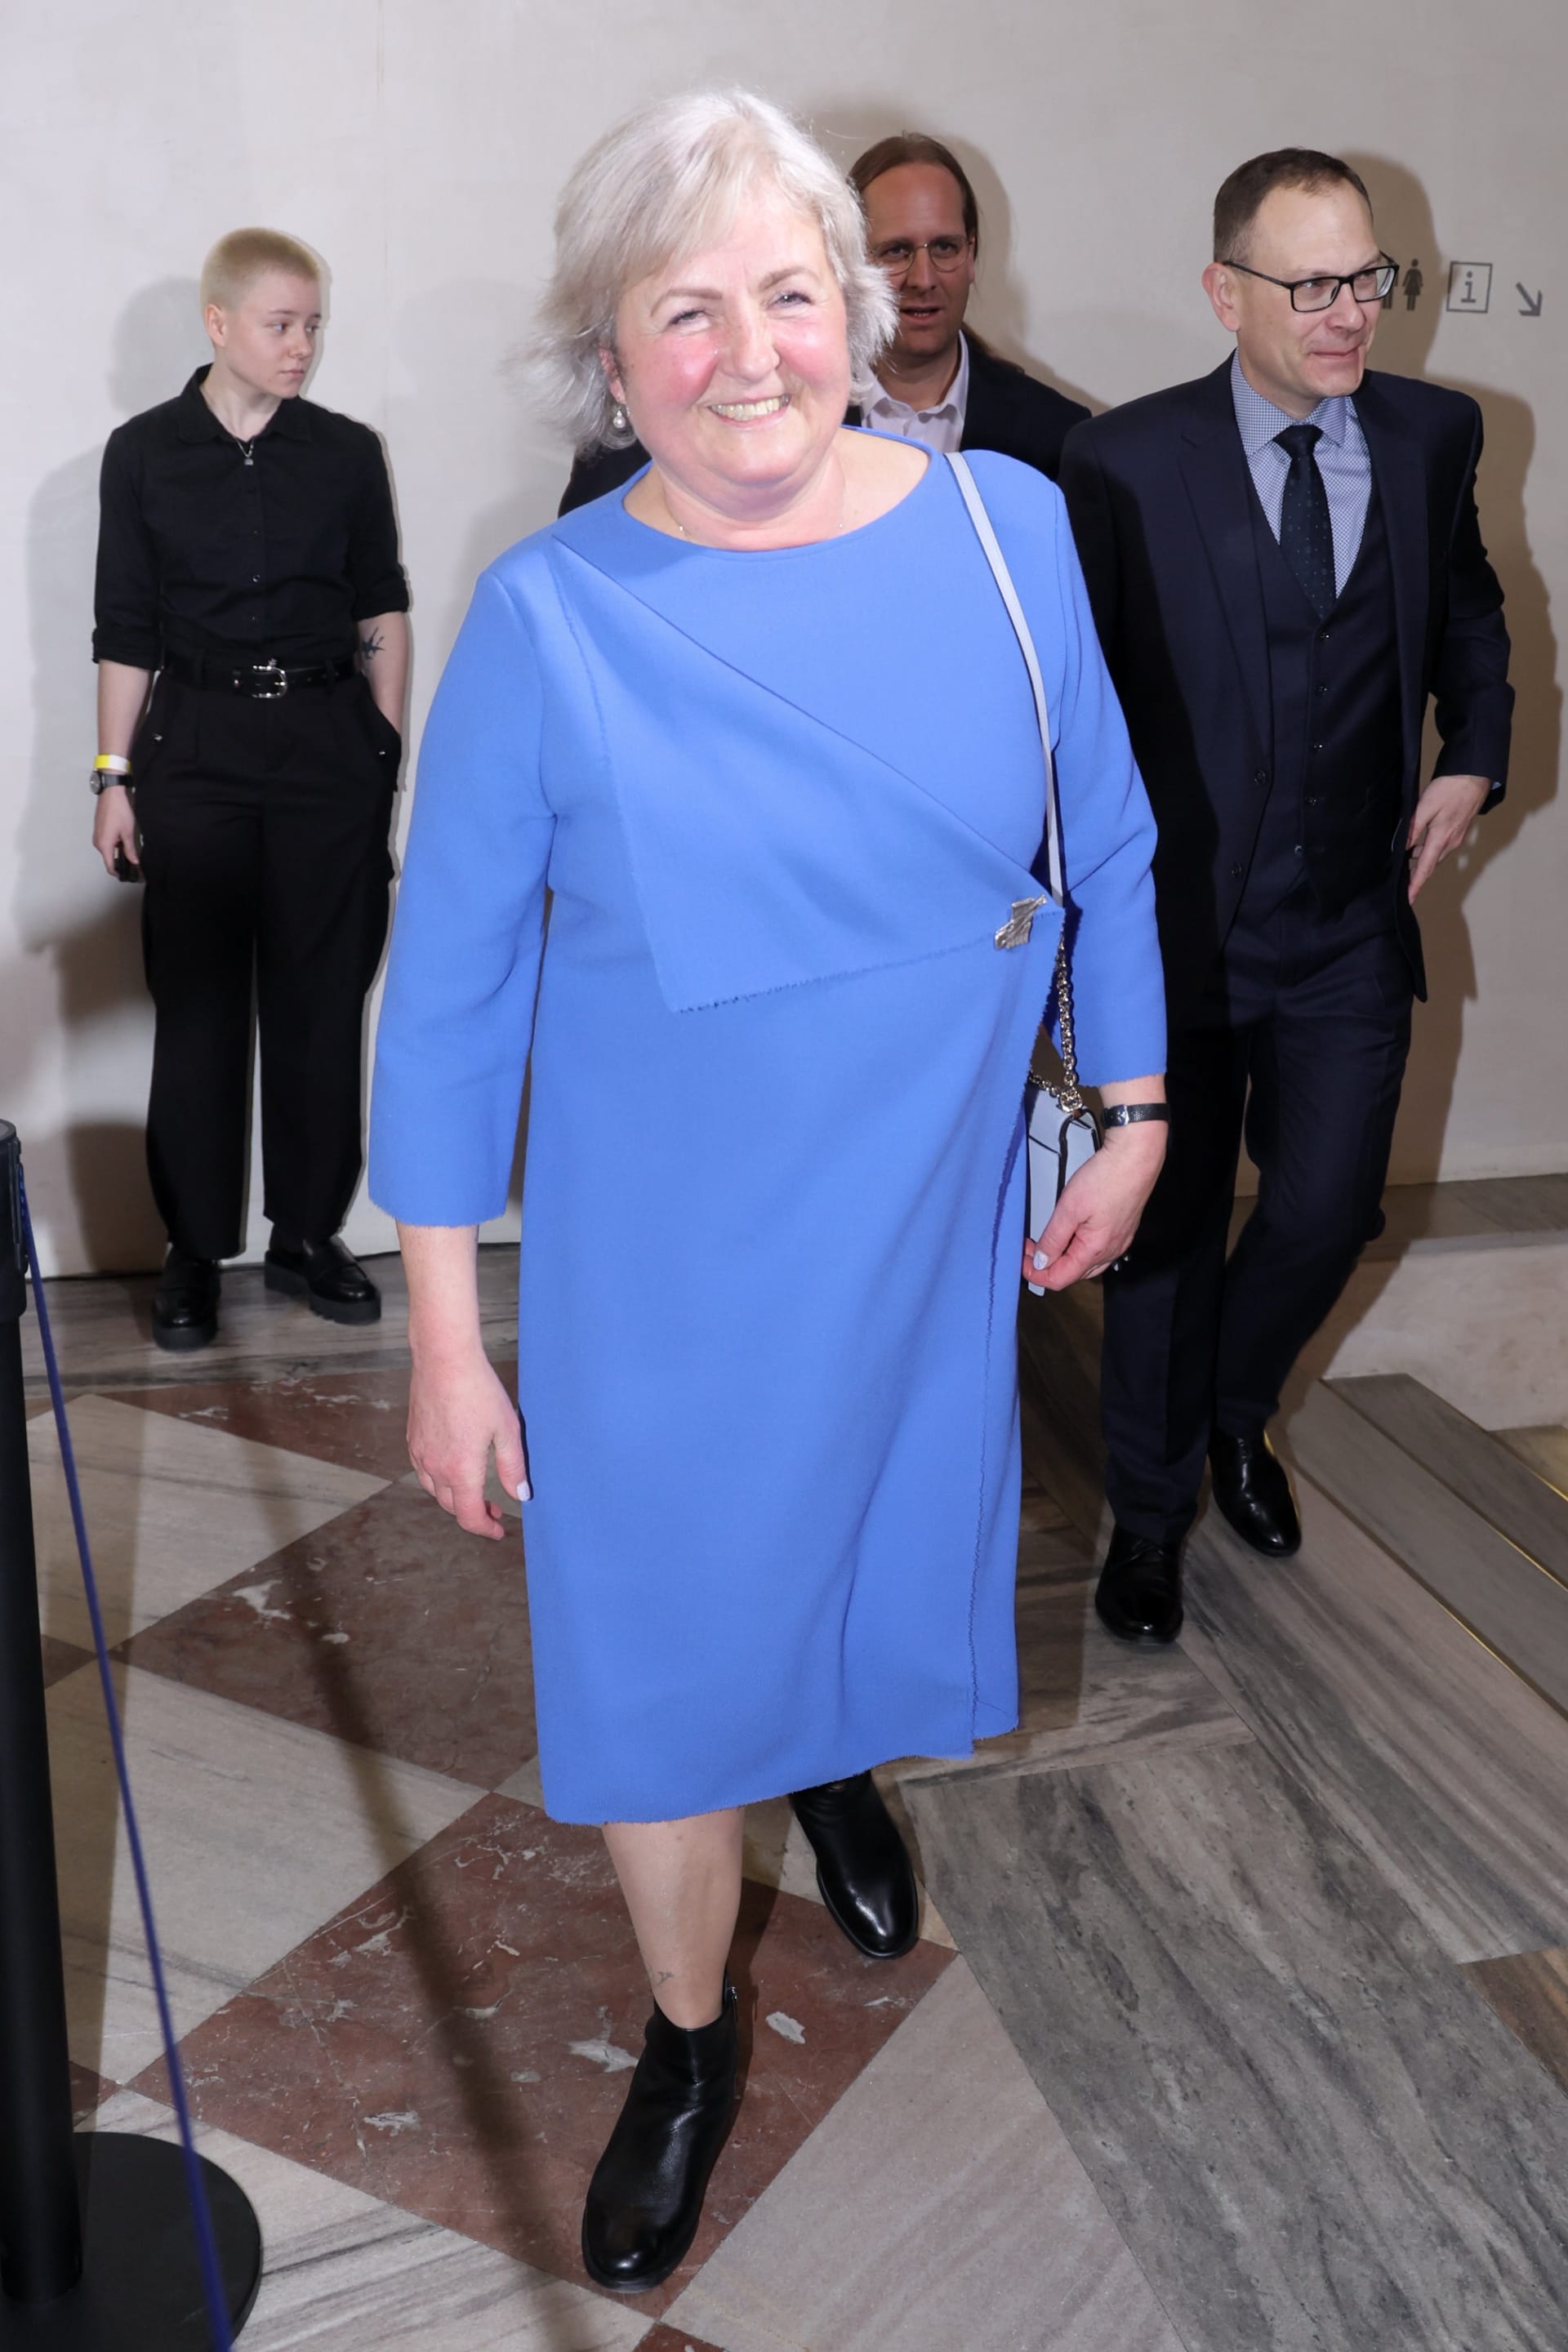 Jana Vohralíková zvolila modré šaty, které však příliš nelichotily její postavě.